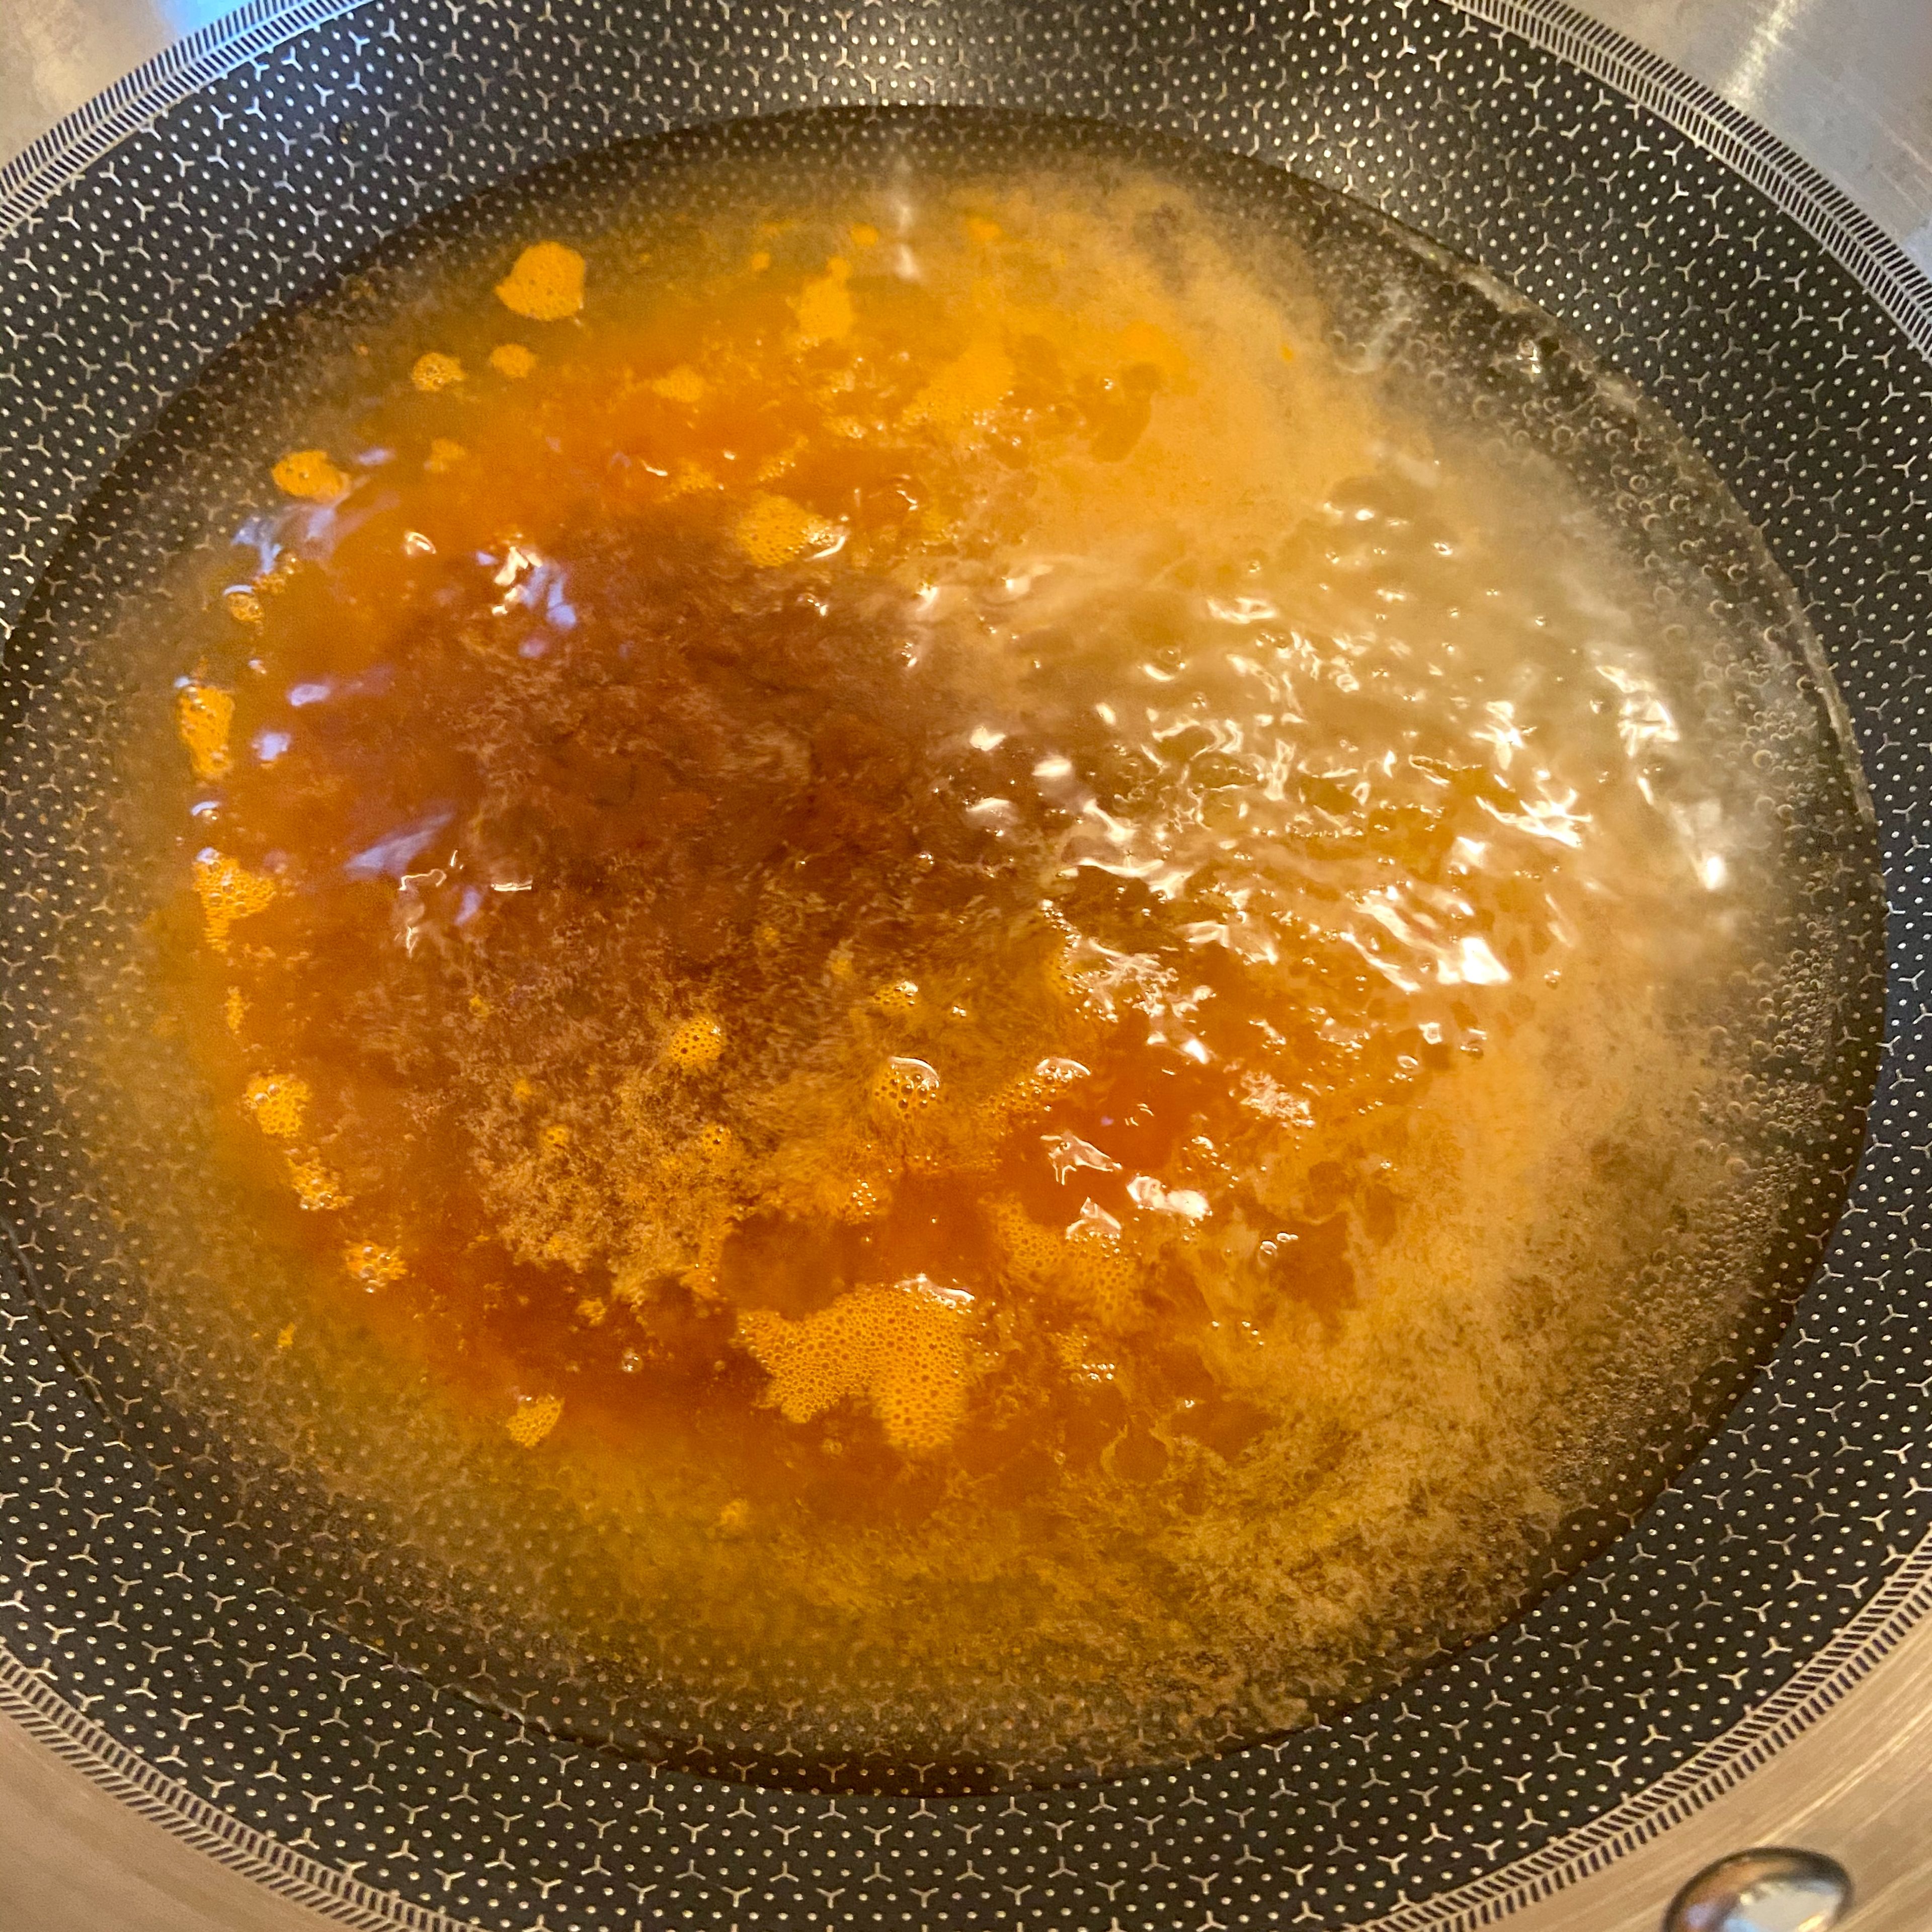 Wasser in einem Wok erhitzen und den Chili-Zucker-Mix hinzufügen, gemeinsam aufkochen und 1-2 Minuten simmern lassen.